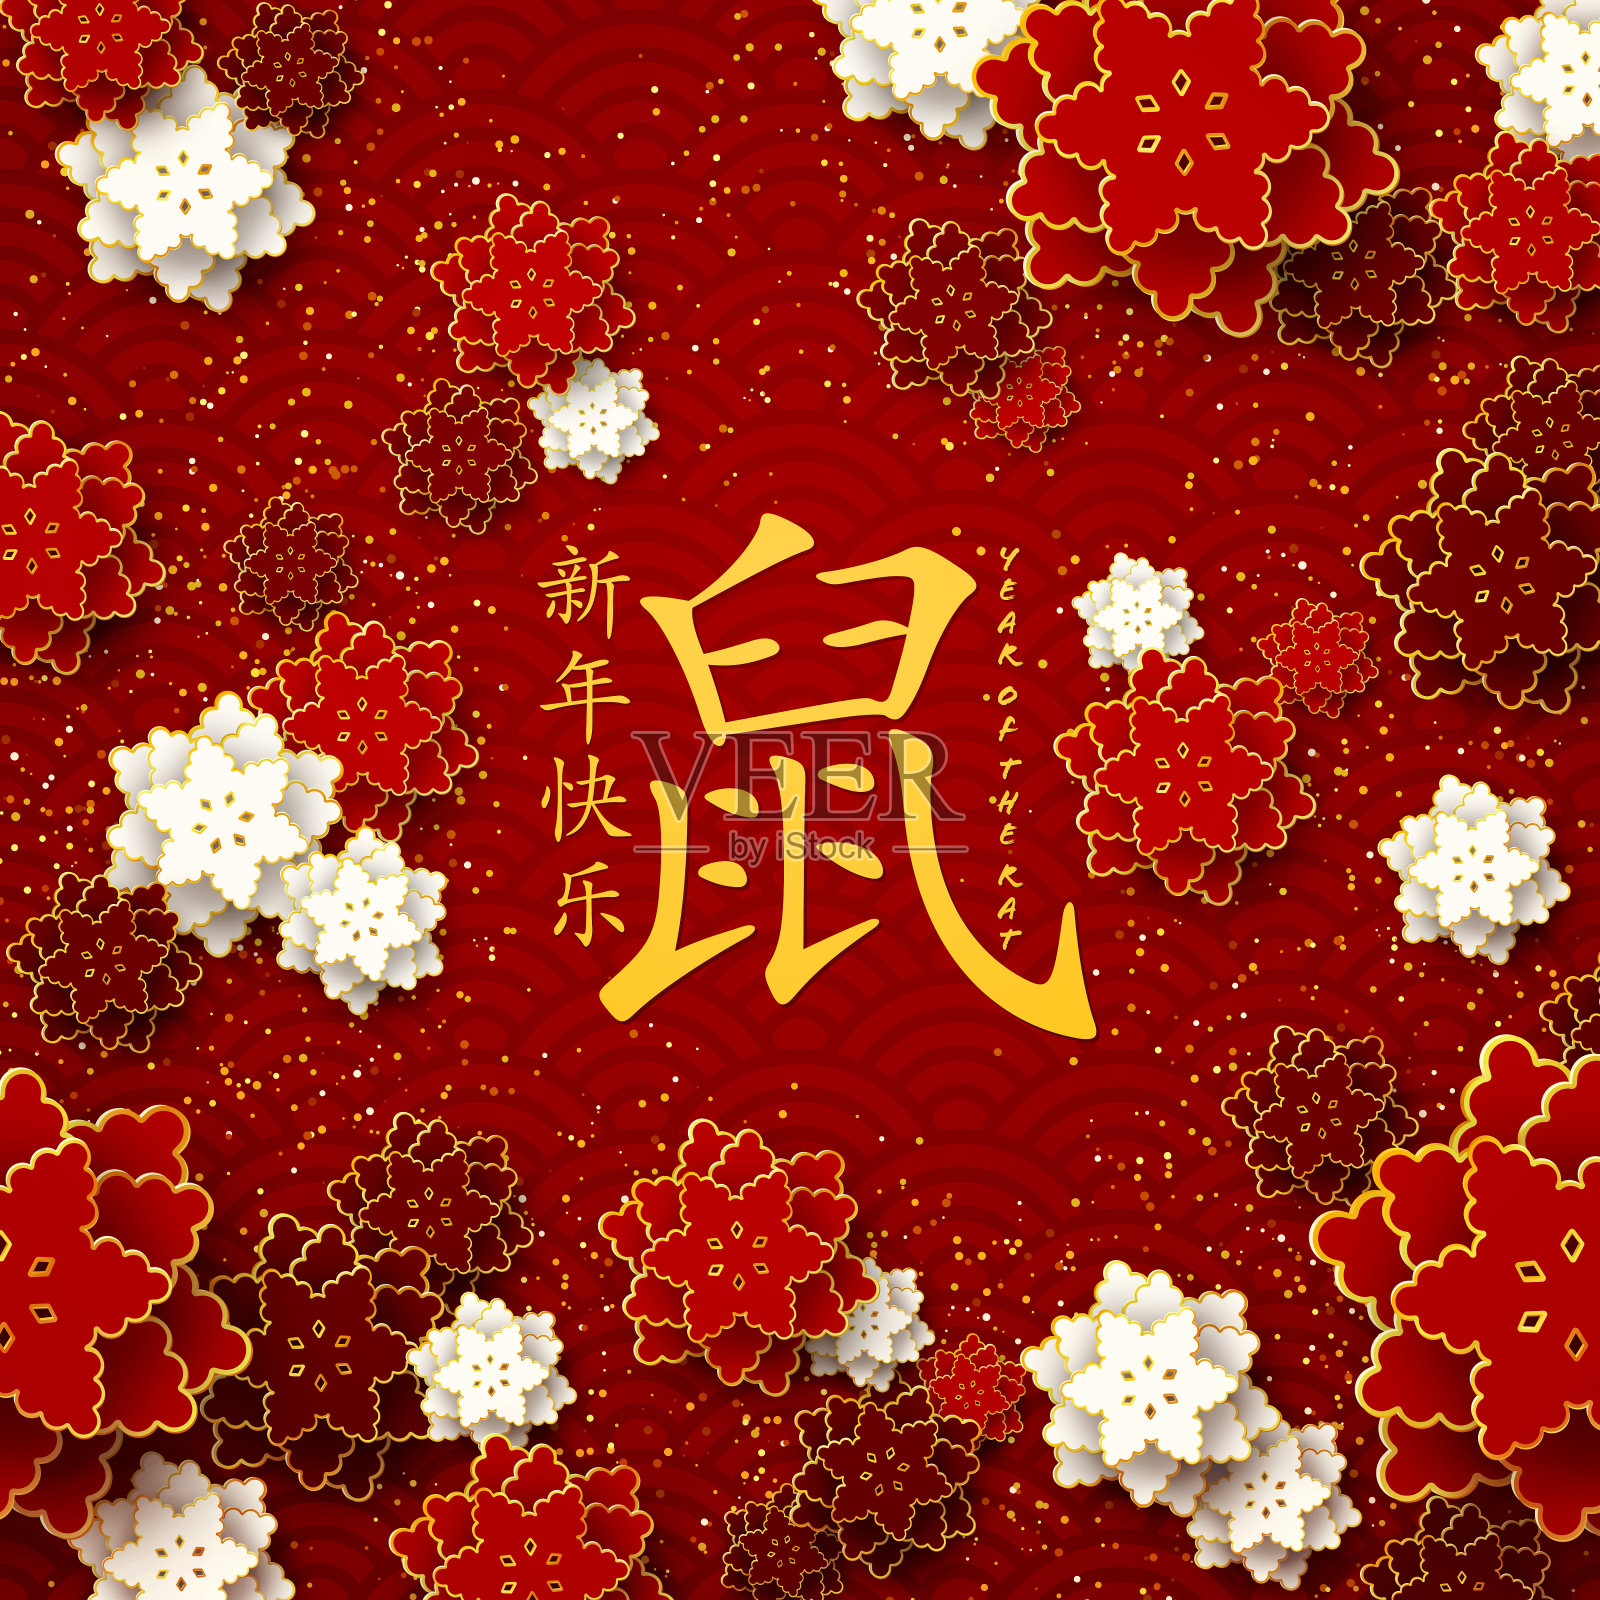 2020年春节快乐红色贺卡设计模板素材